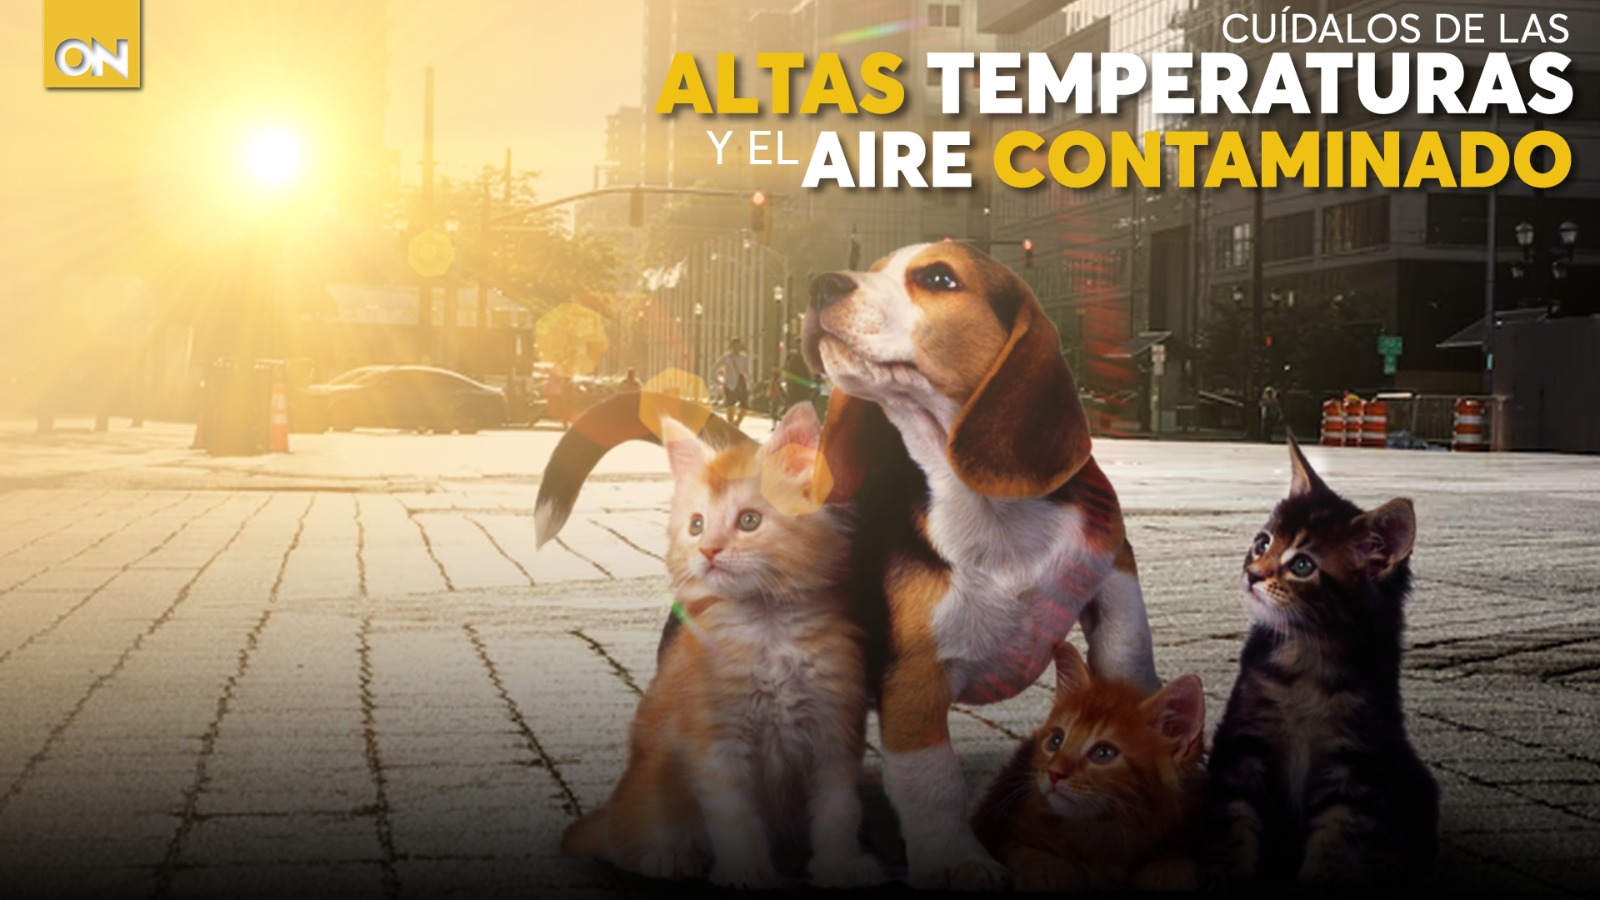 ¿Cómo cuidar a tu mascota por altas temperaturas y aire contaminado? Aquí te lo contamos